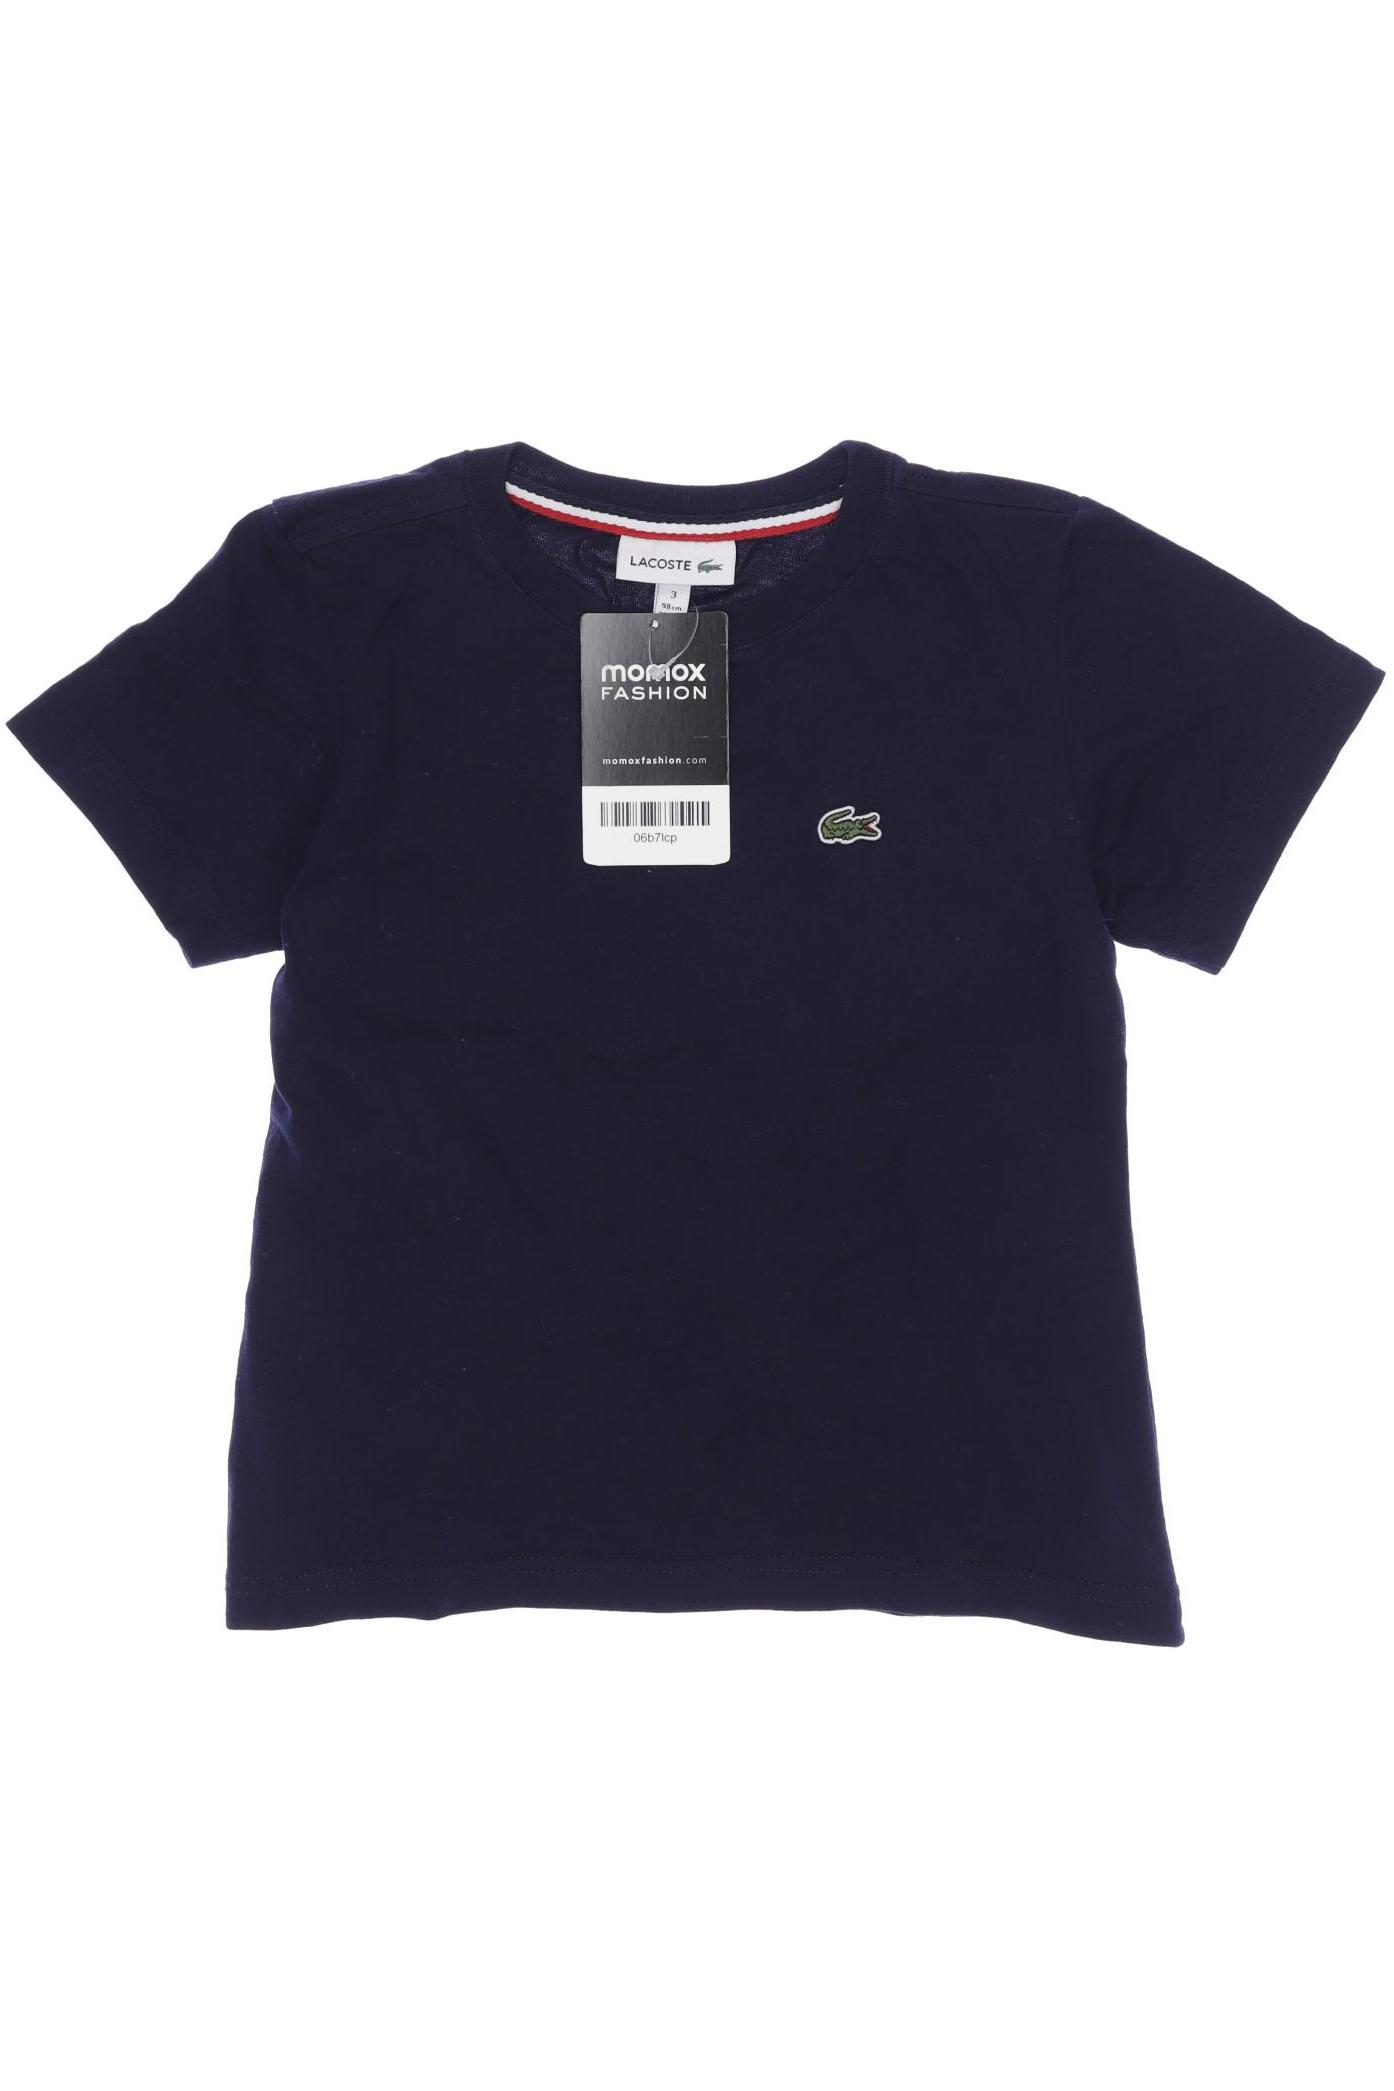 Lacoste Jungen T-Shirt, marineblau von Lacoste